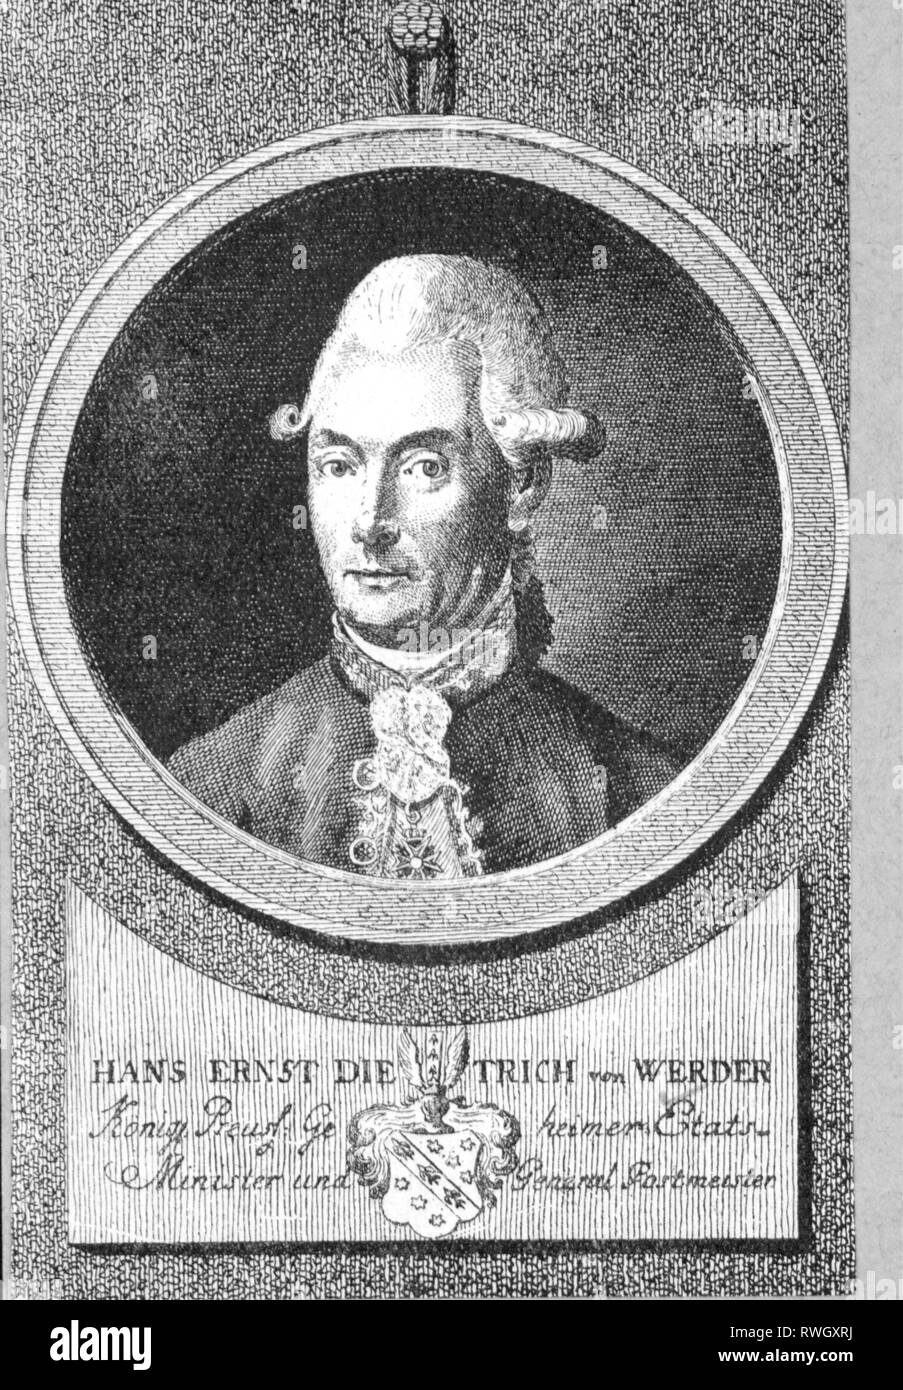 Il Werder, Hans Ernst Dietrich von, 23.9.1740 - 22.6.1800, Prussiani funzionario, ministro presso la Direzione generale 1781 - 1791, ritratto, dopo incisione su rame di Daniel Berger, circa 1785, Additional-Rights-Clearance-Info-Not-Available Foto Stock